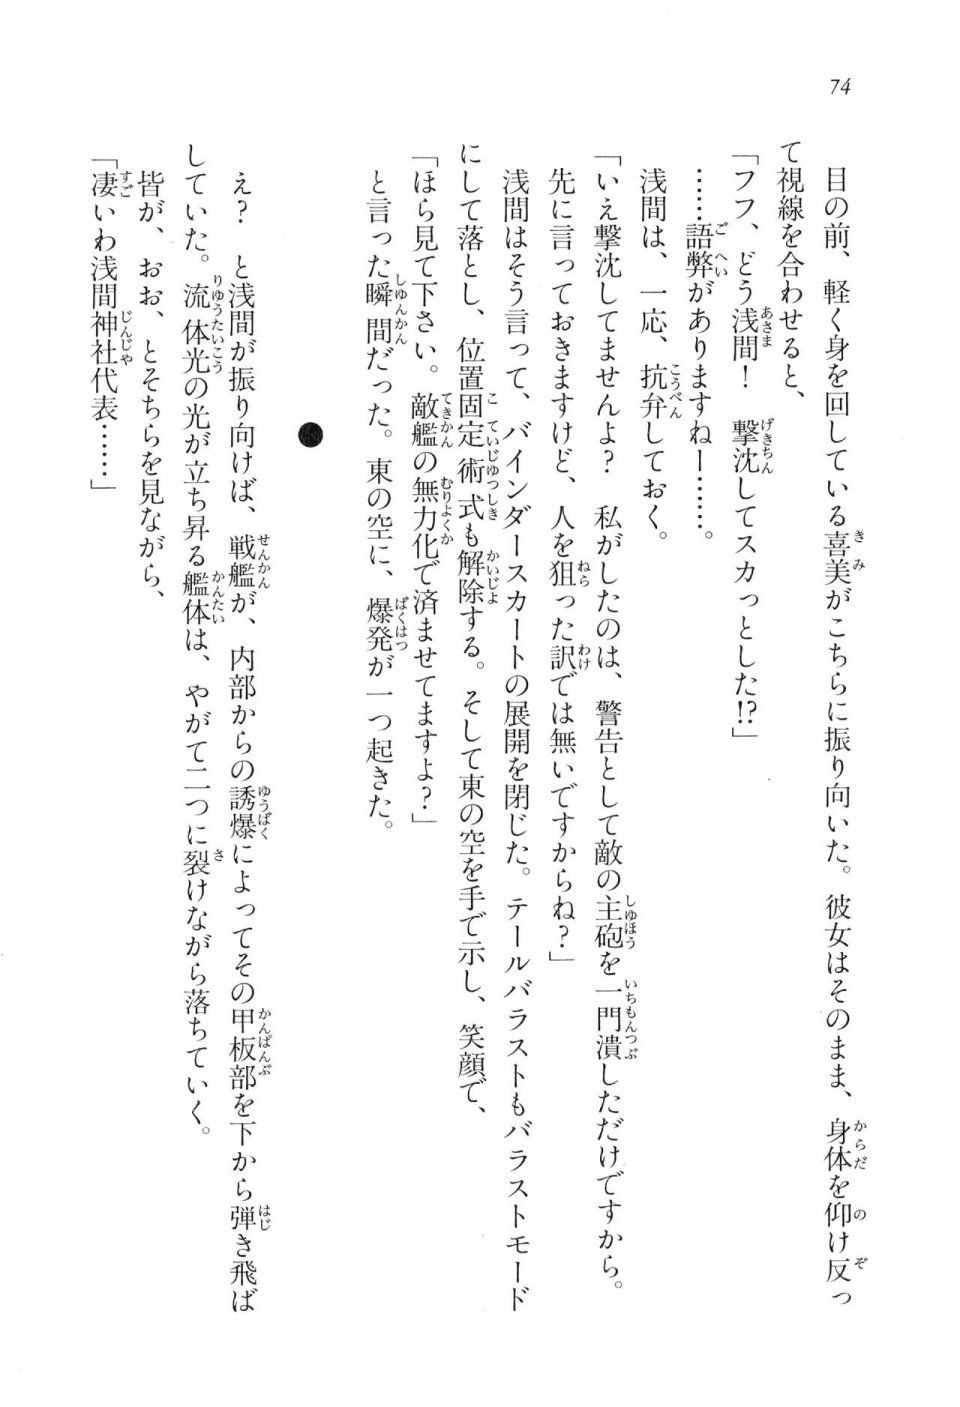 Kyoukai Senjou no Horizon LN Vol 17(7B) - Photo #74